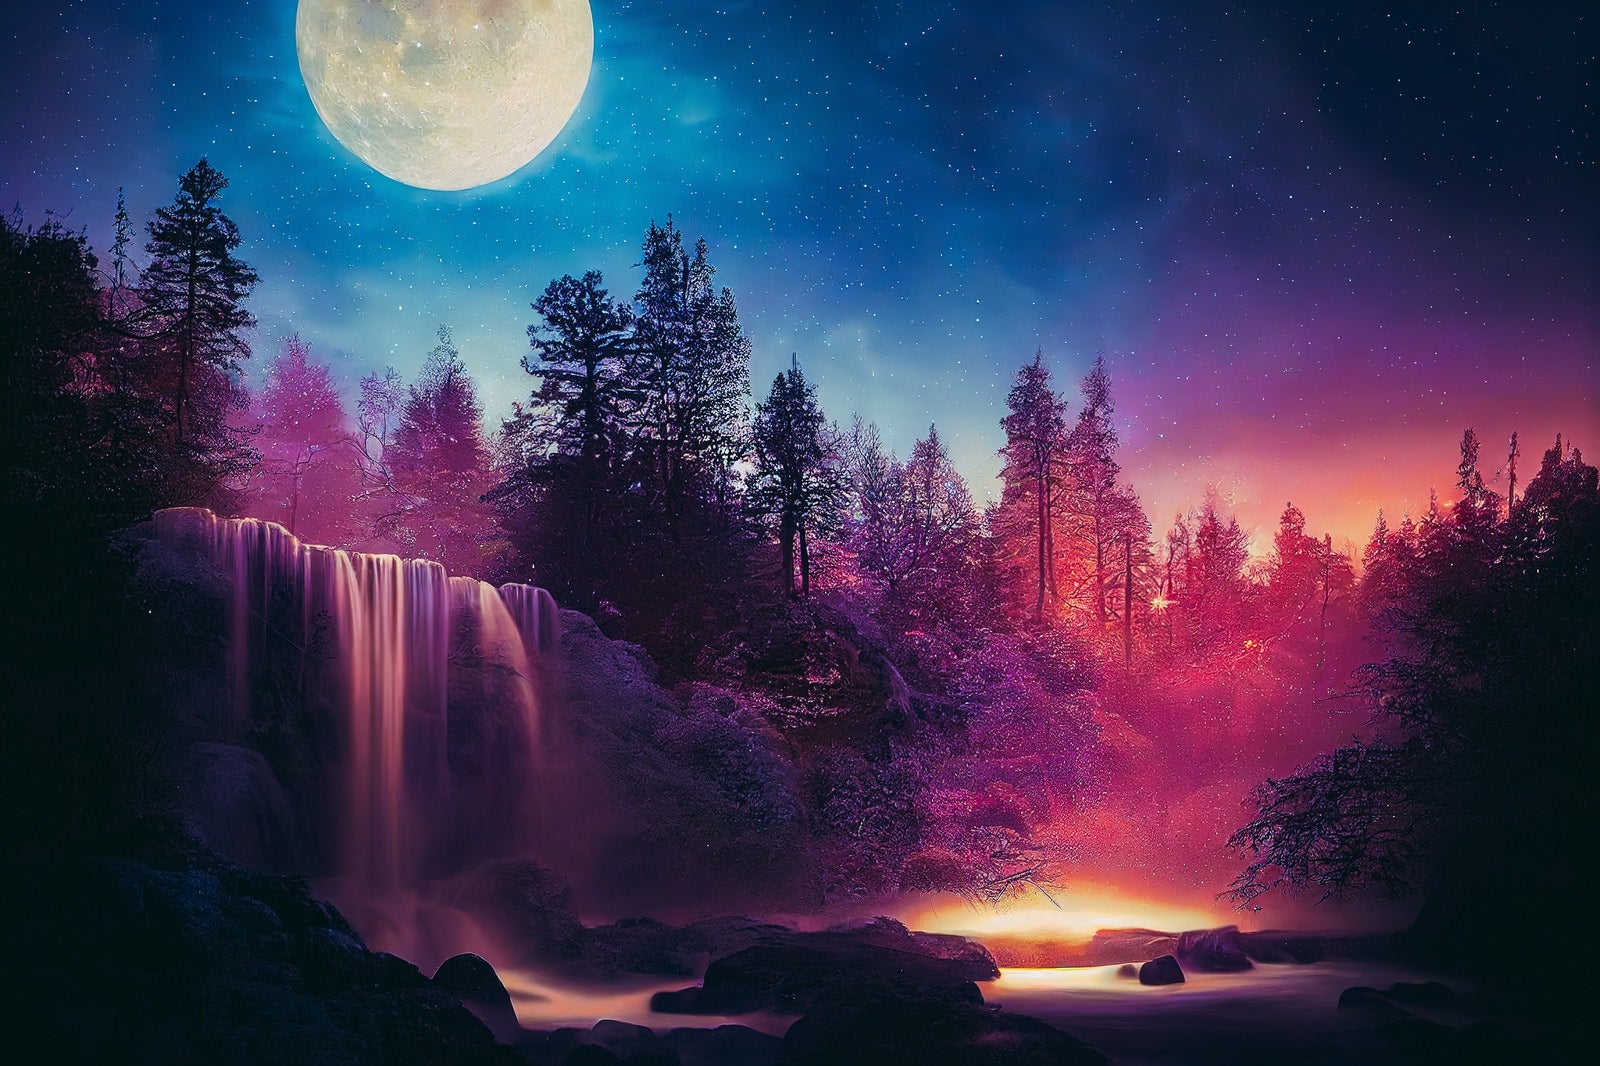 「星空に浮かぶ月と森の滝」の写真